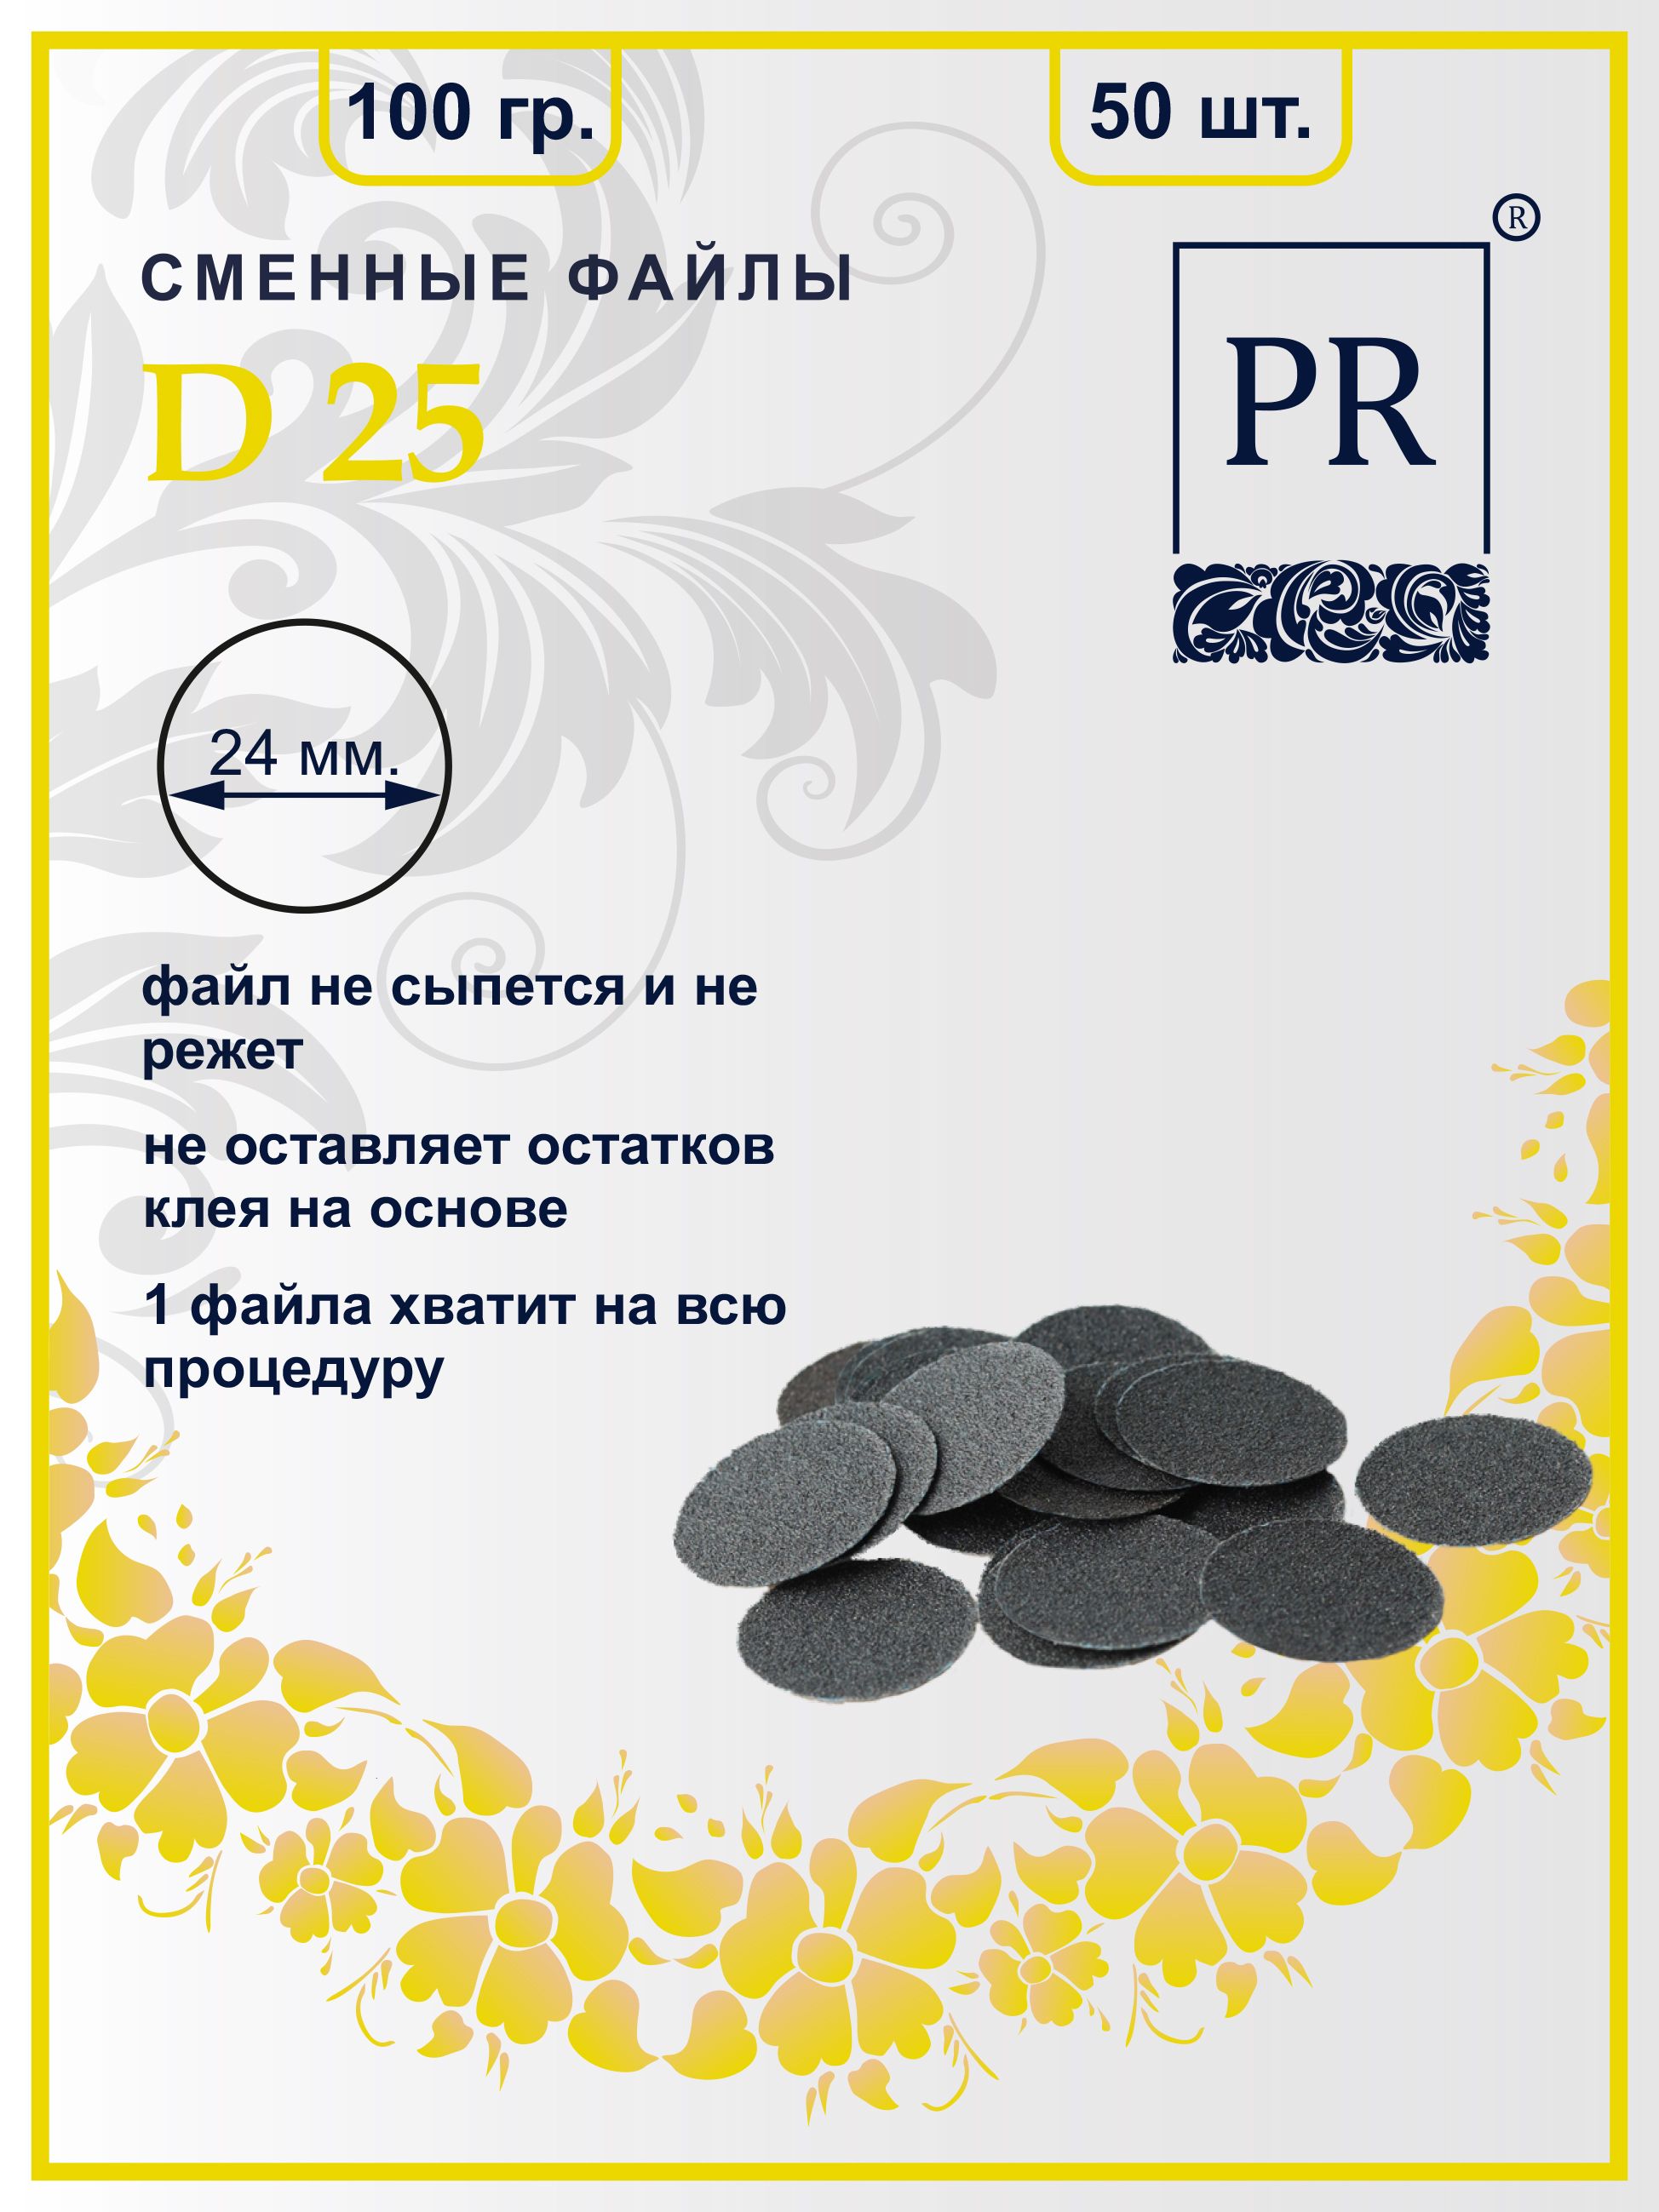 Сменные файлы Pilochki Russia диски для педикюра для диска L 100 грит 50 штук